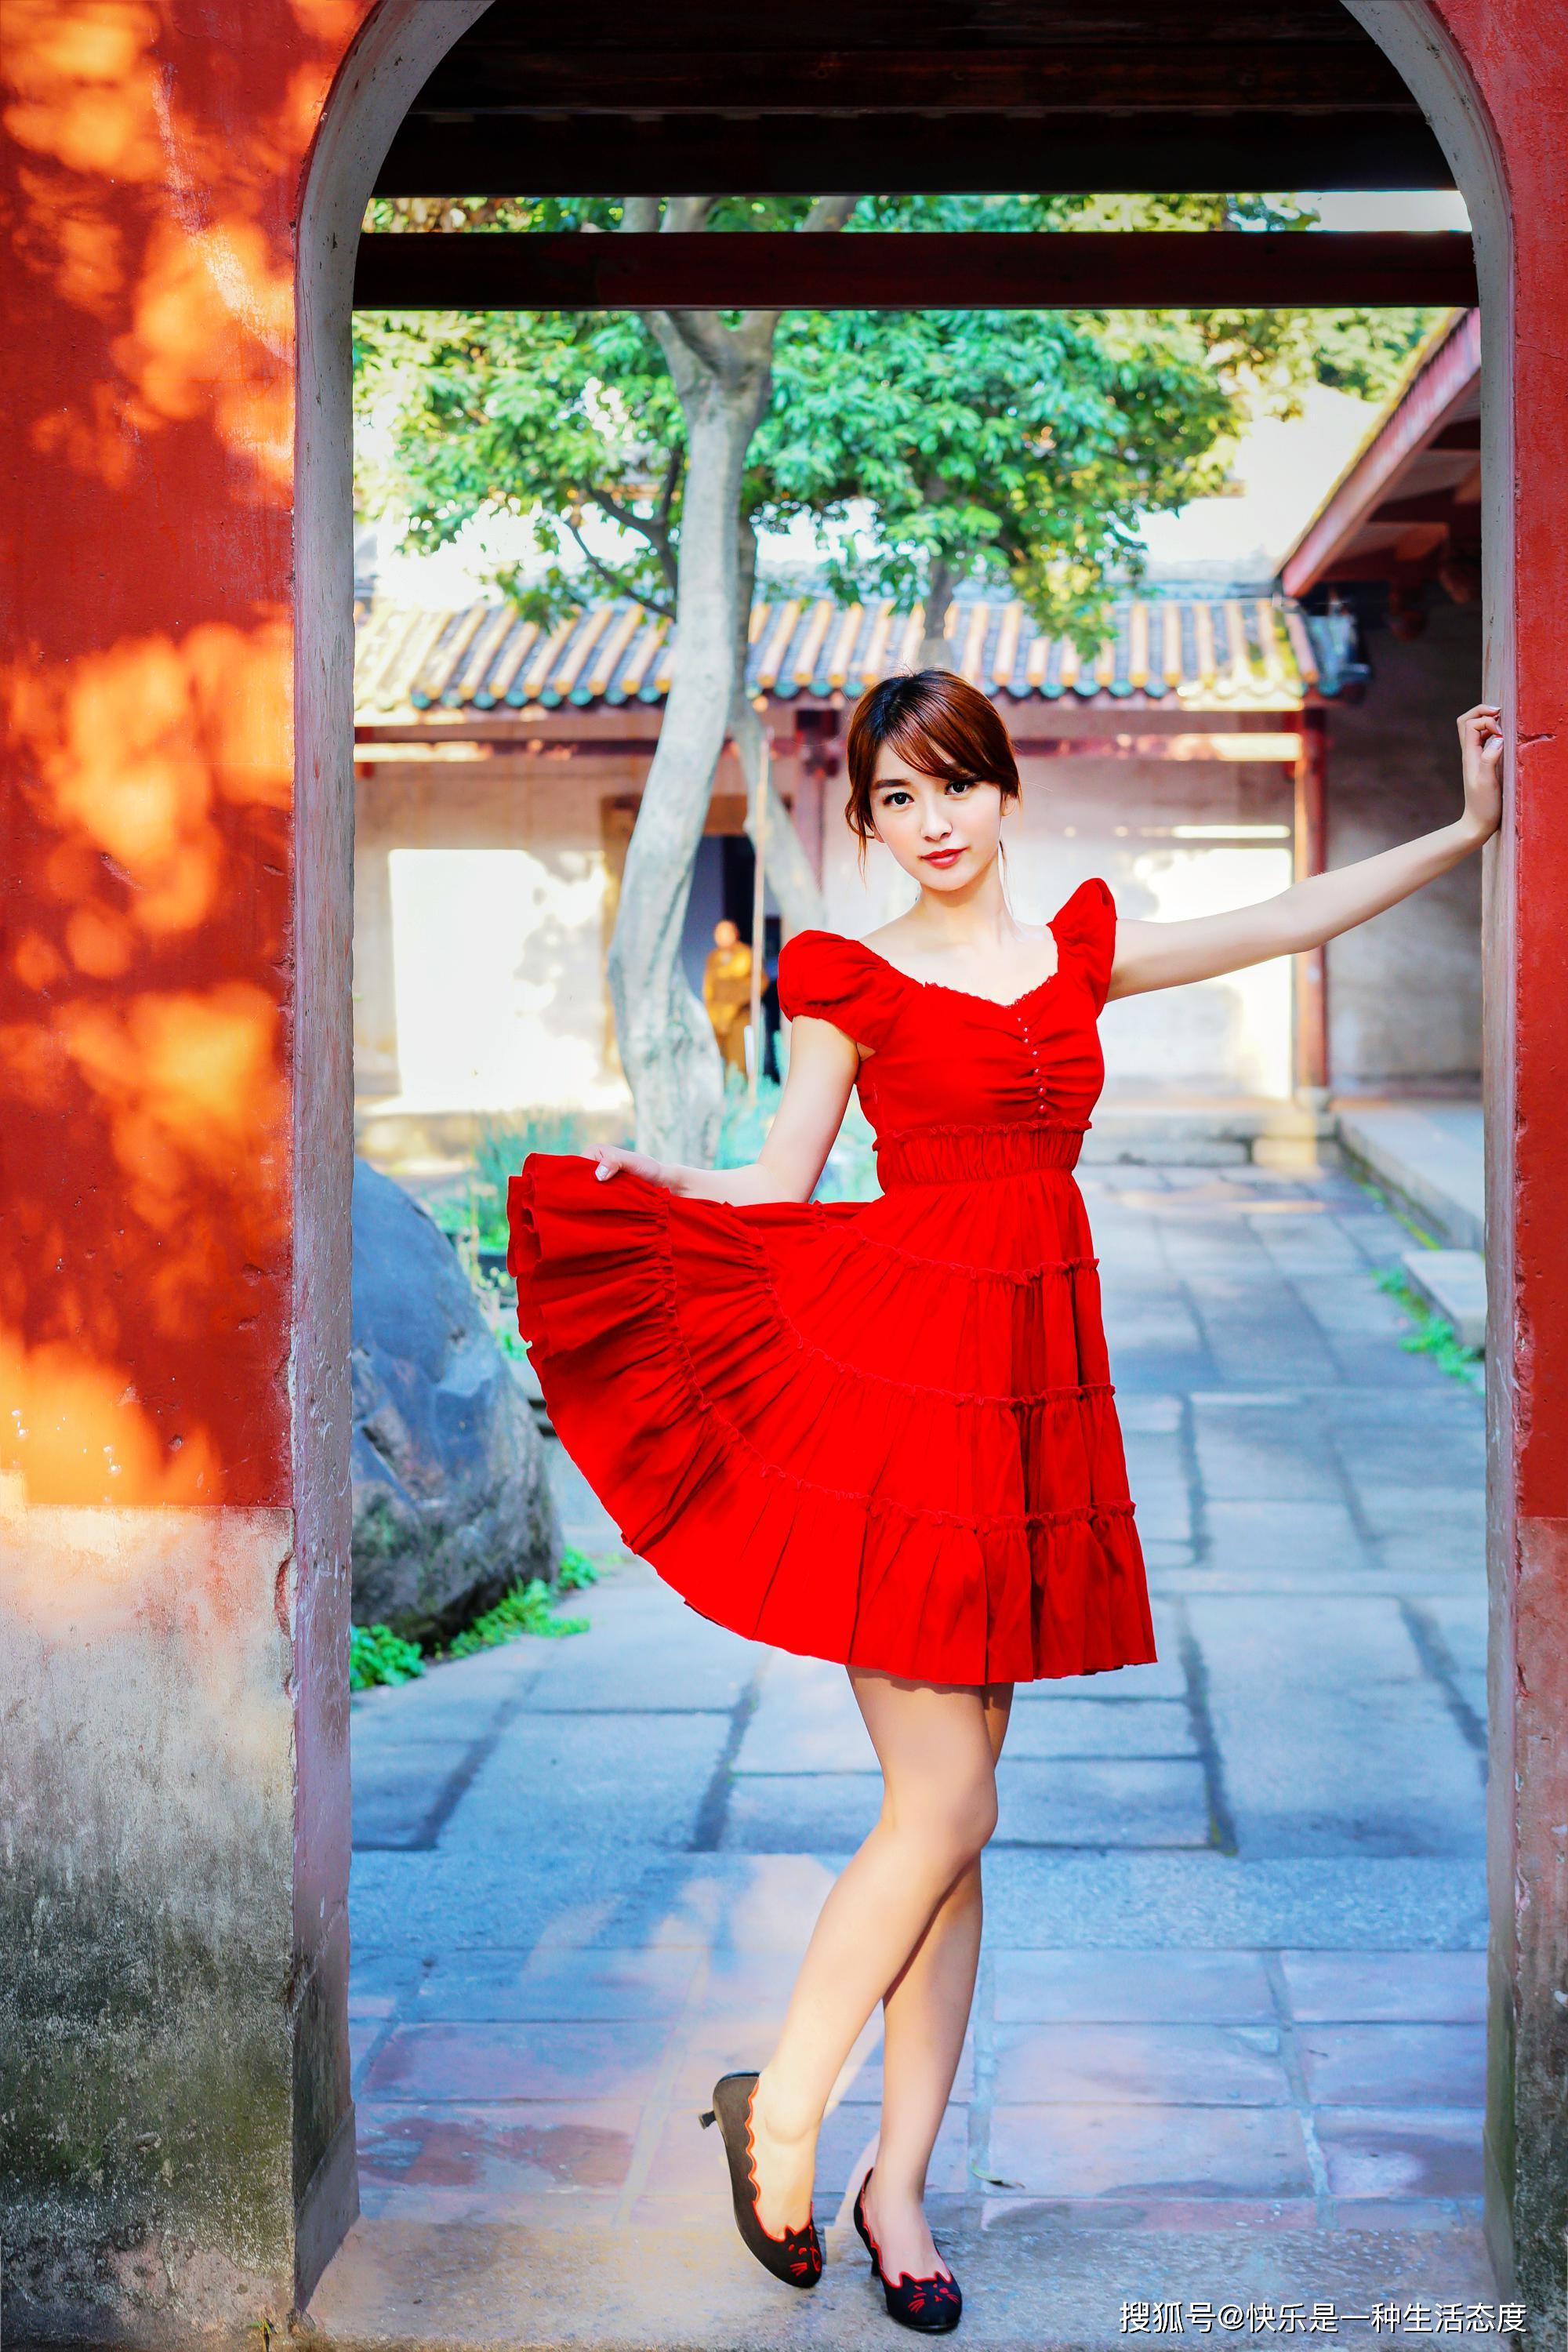 时尚穿搭第一百四十期,红裙美女的气质穿搭美照